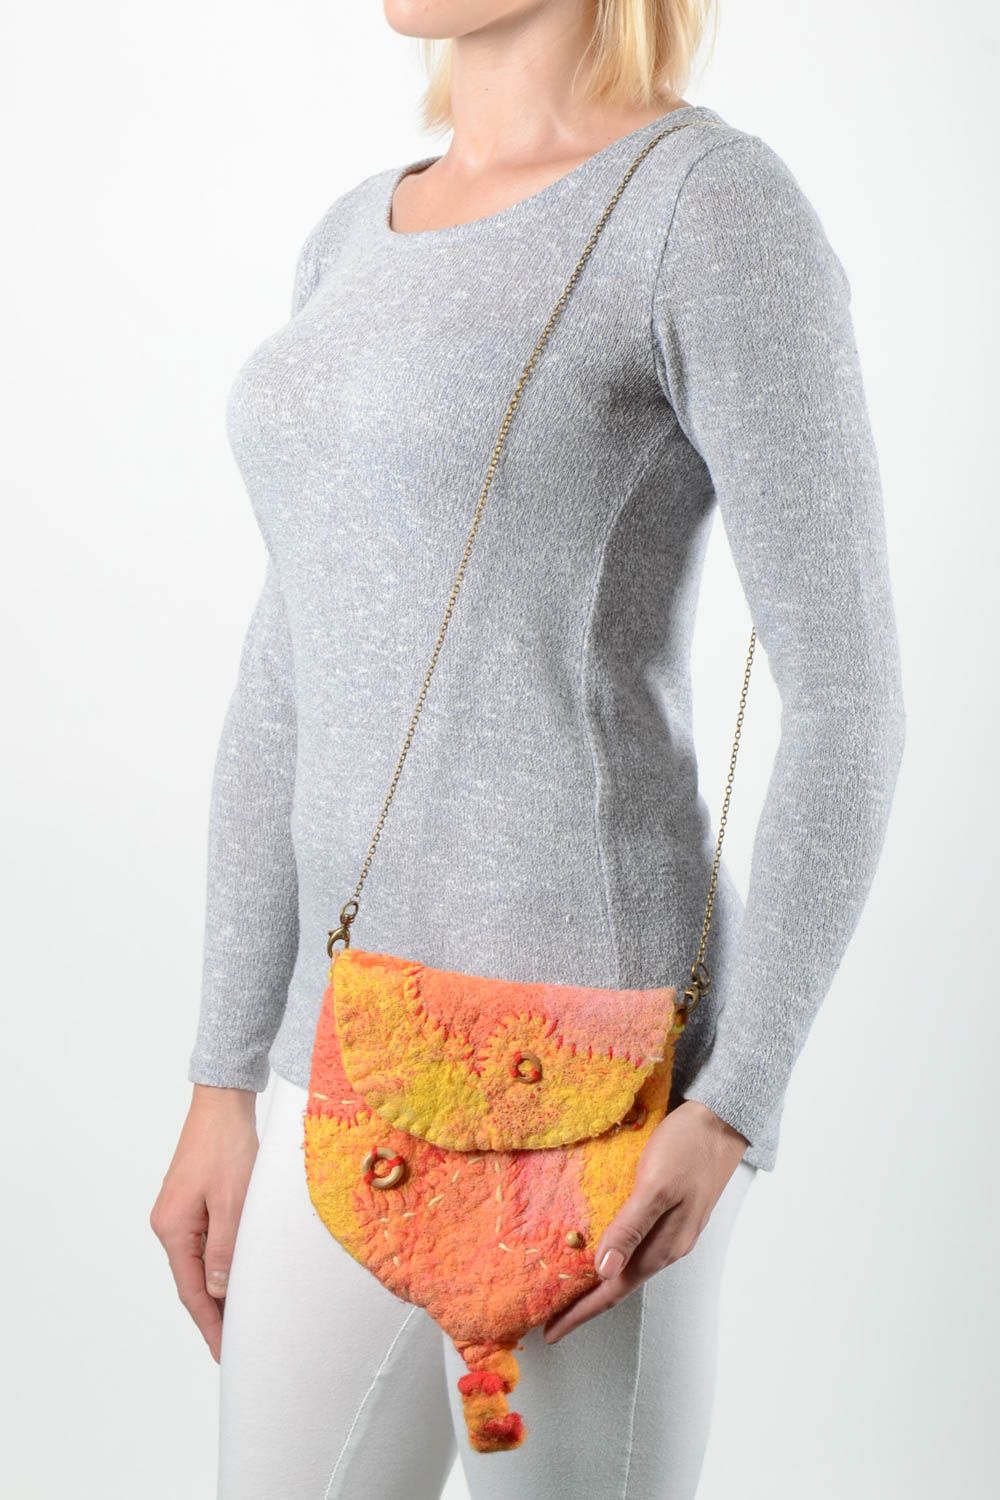 Handmade gefilzte Tasche Damen Accessoire Geschenk für Frau aus Wolle orange foto 1